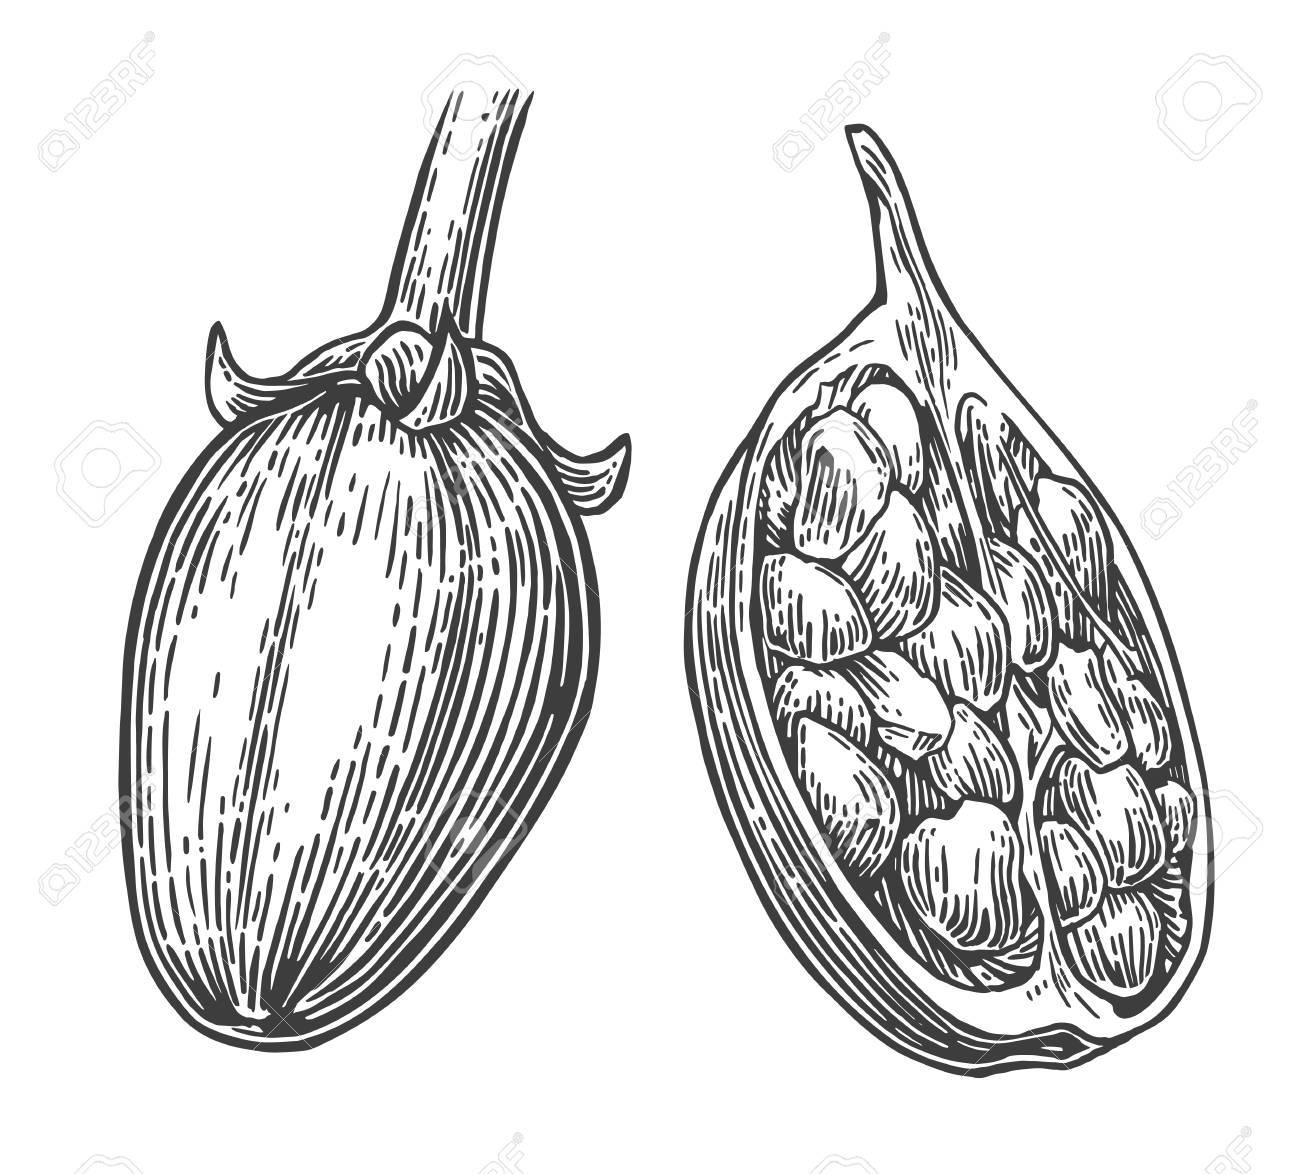 Baobab Fruit And Seeds Vector Vintage Engraved Illustration